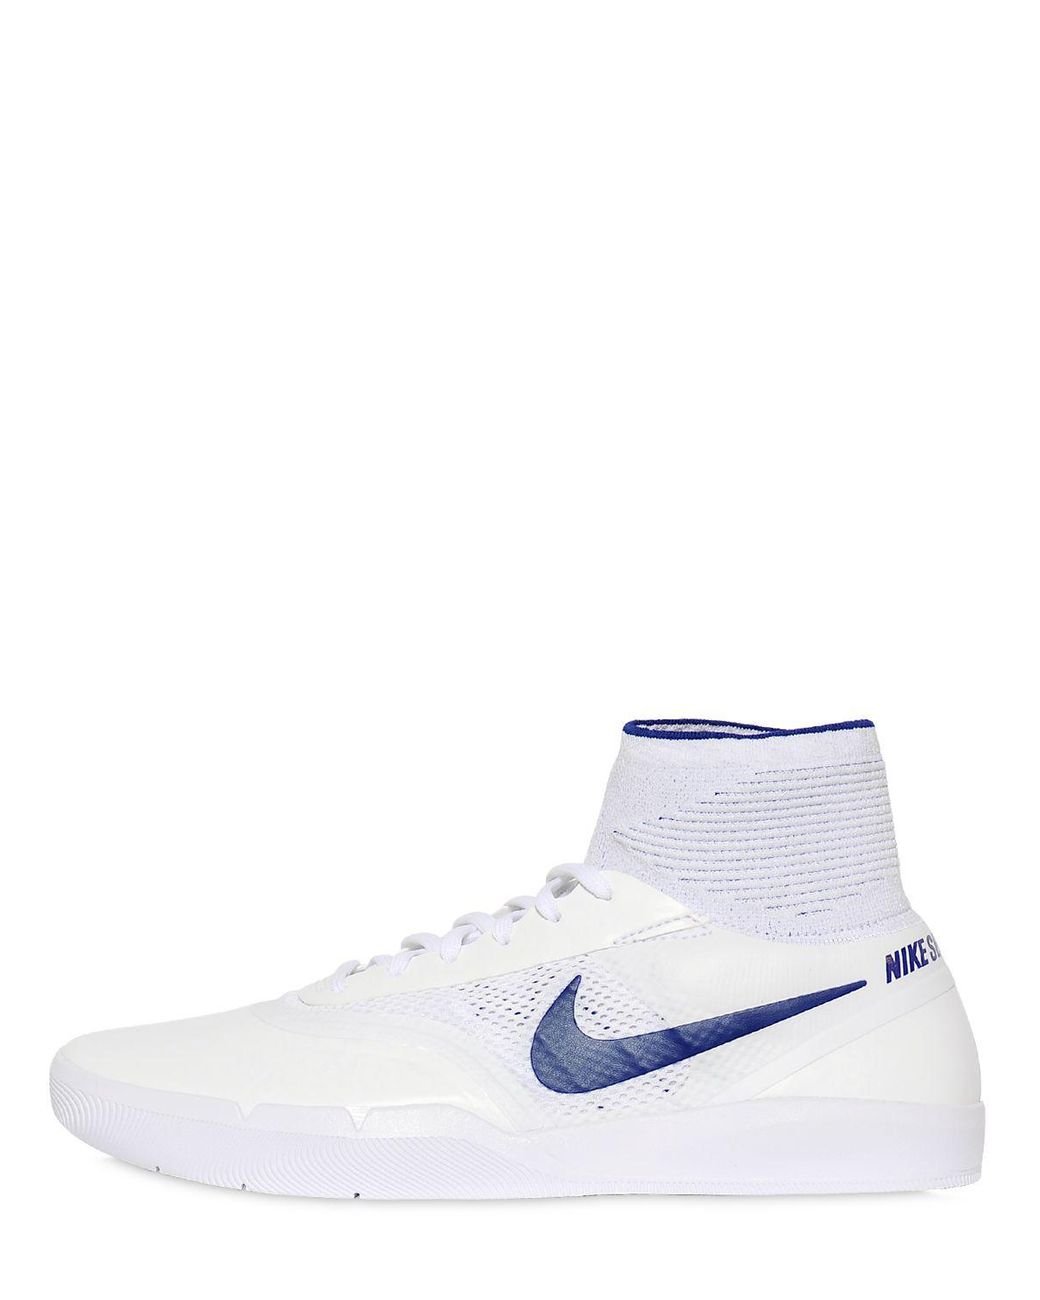 Nike Sb Eric Koston Hyperfeel Sneakers in White for Men Lyst